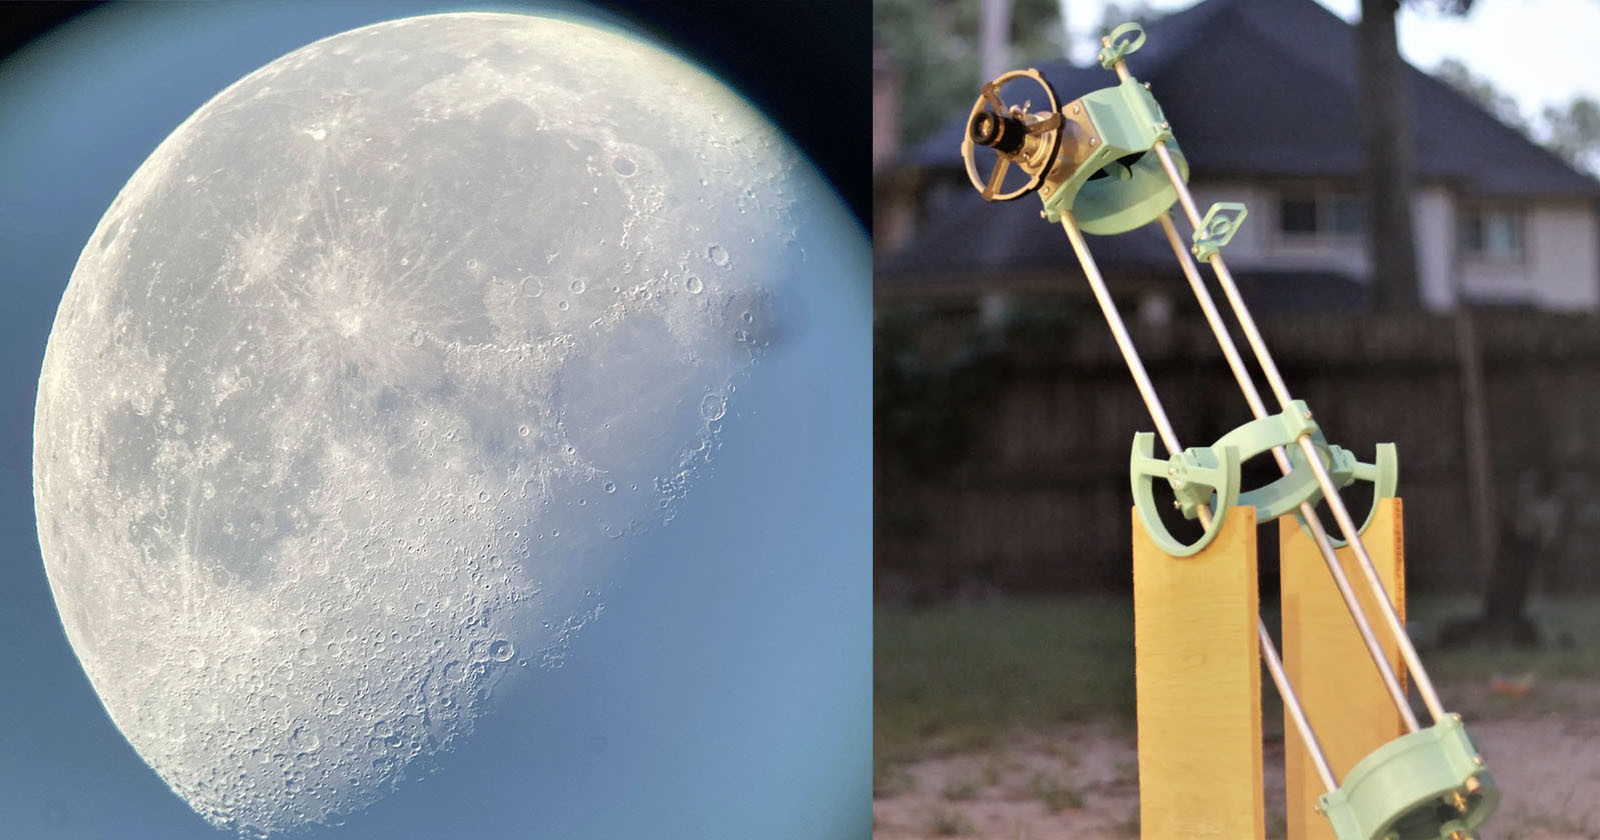  photographer creates diy telescope snap incredible photos 